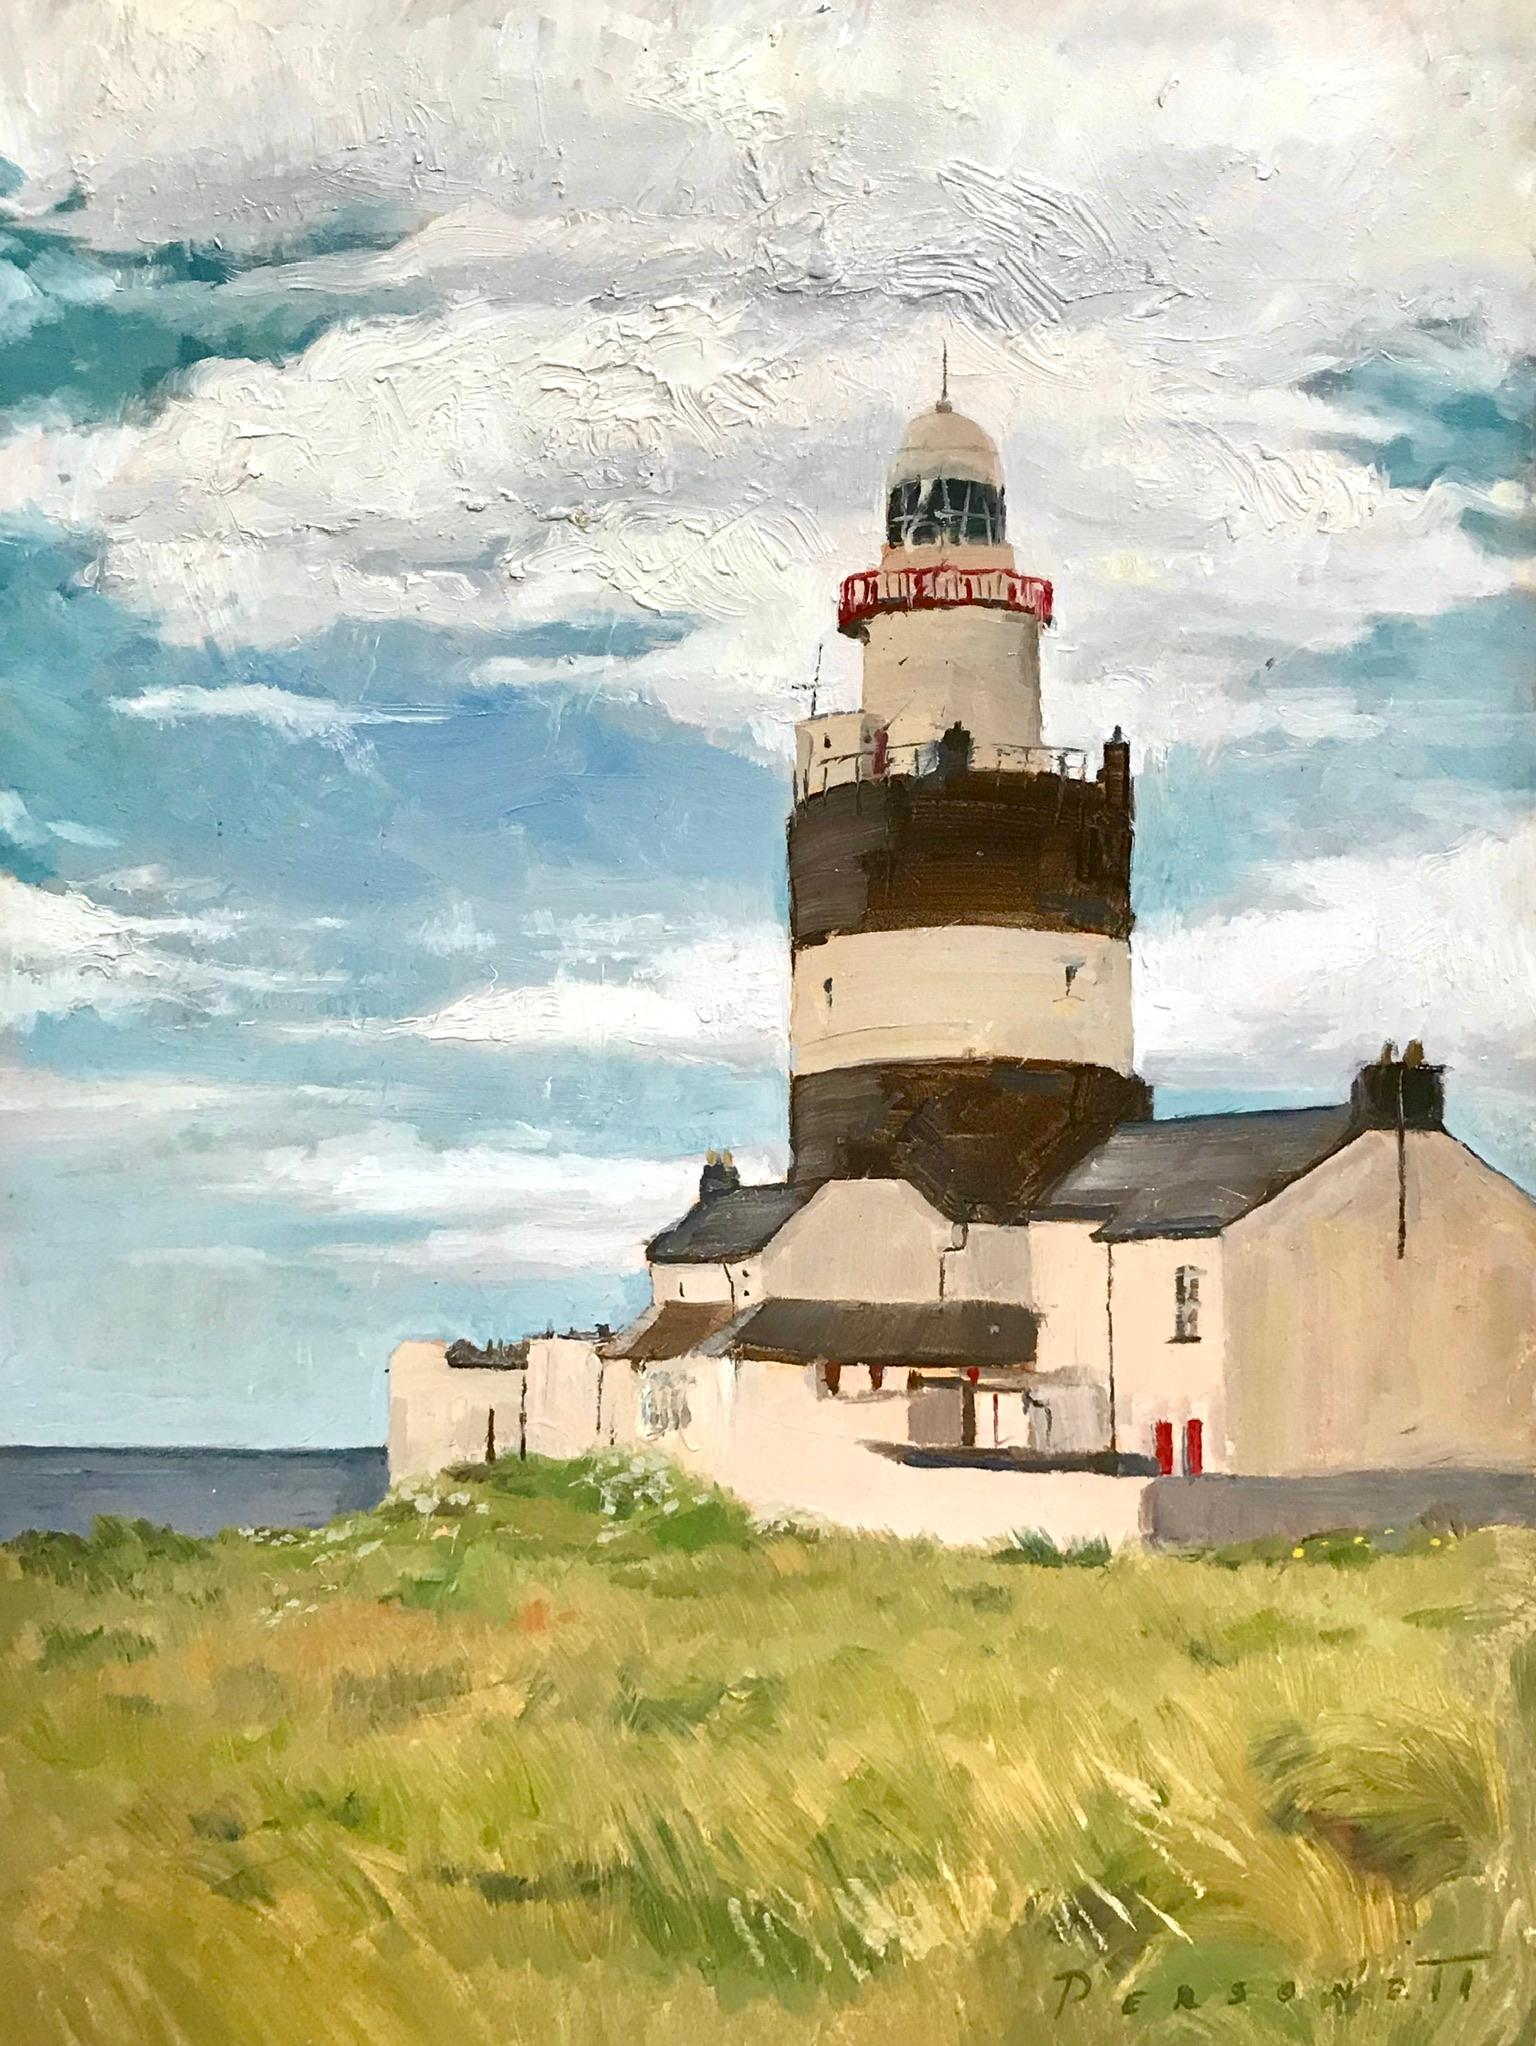 Rachel Personett Figurative Painting – "Hook Head Lighthouse", zeitgenössisches realistisches Ölgemälde, Wahrzeichen Irlands